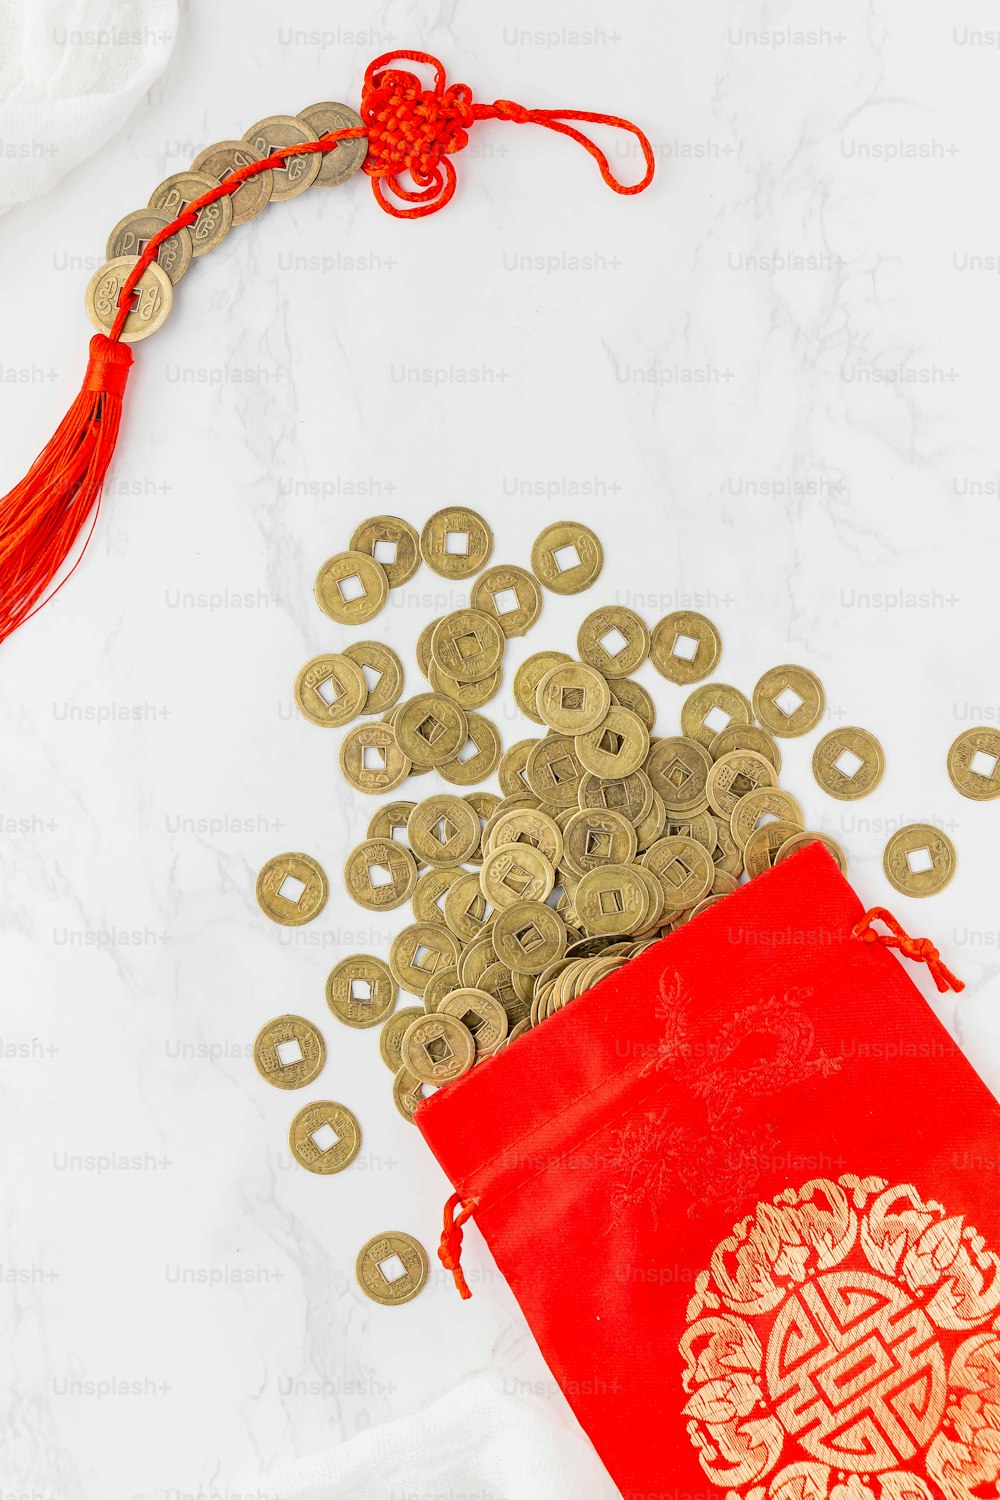 una borsa rossa piena di monete d'oro accanto a una borsa rossa piena di monete d'oro